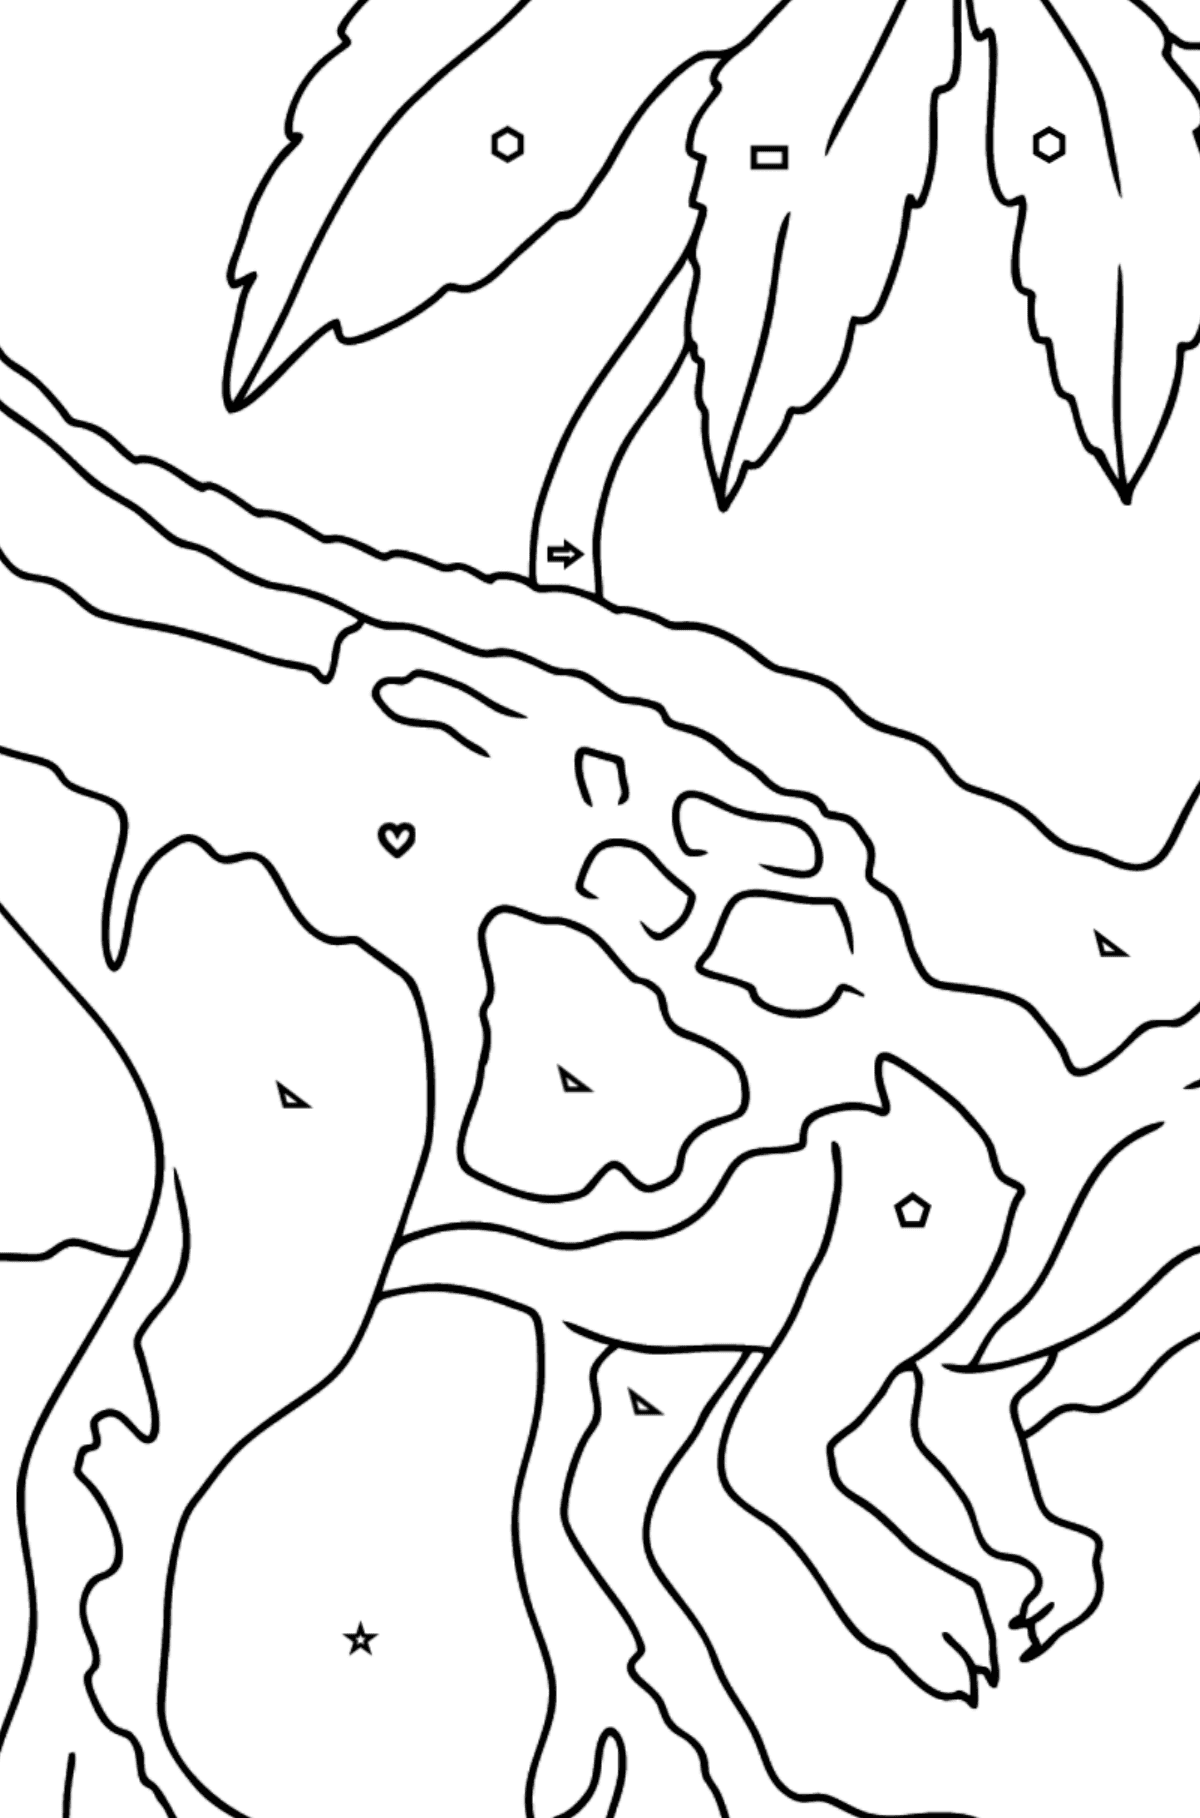 Tiranosaurio depredador Dibujo para colorear - Colorear por Formas Geométricas para Niños